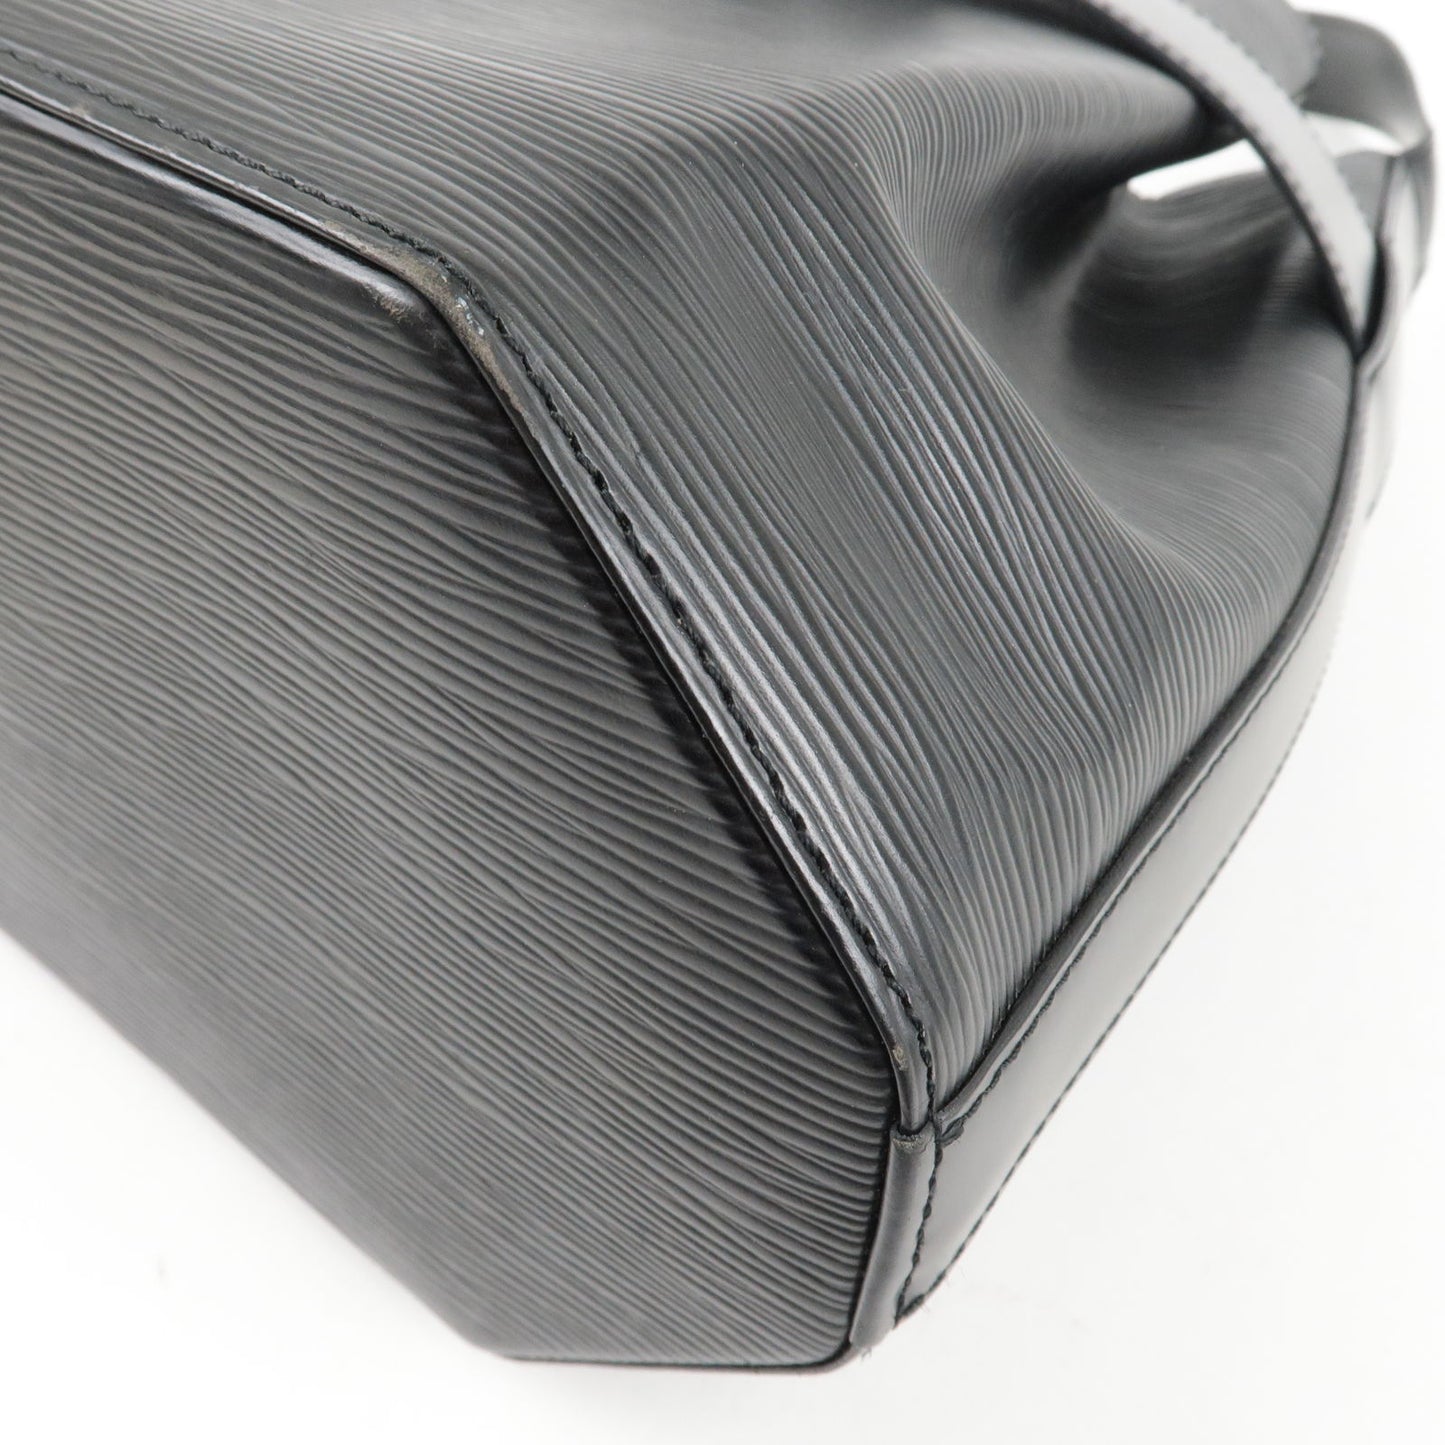 Louis Vuitton Epi Sac D'epaule PM Bucket Bag Noir Black M80157